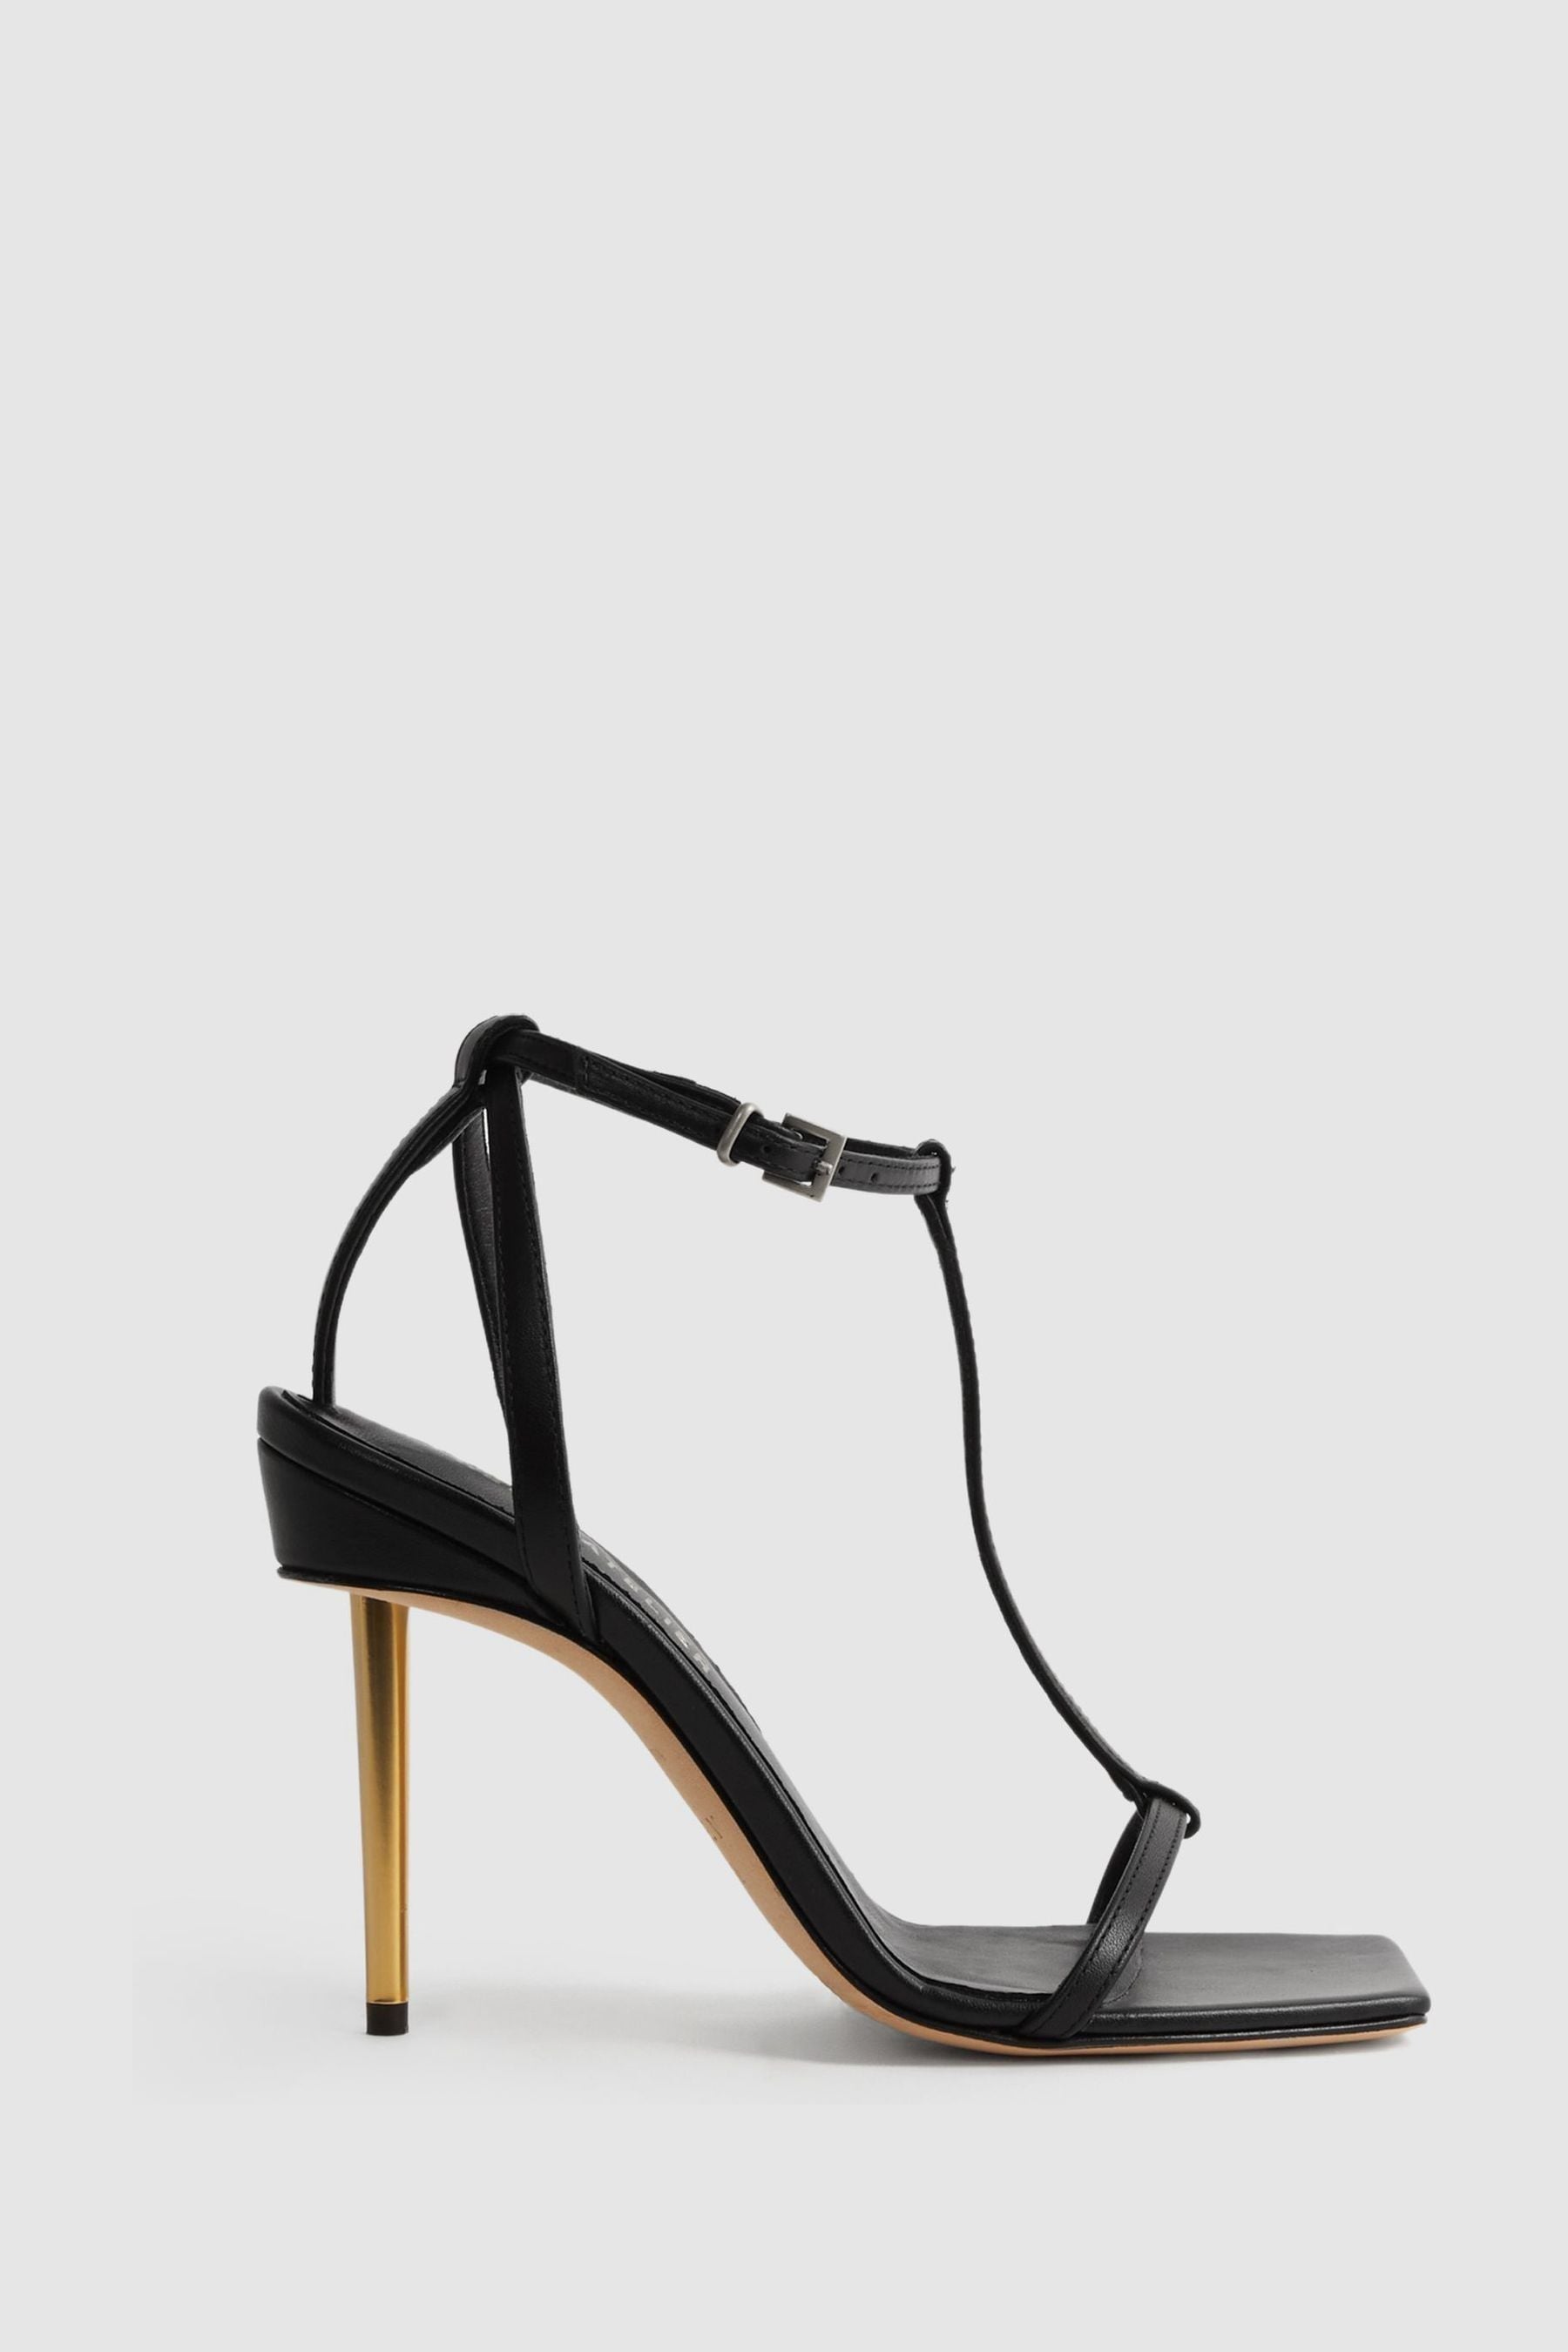 Reiss Sophia - Black Atelier Italian Leather Strappy Heels, Uk 5 Eu 38